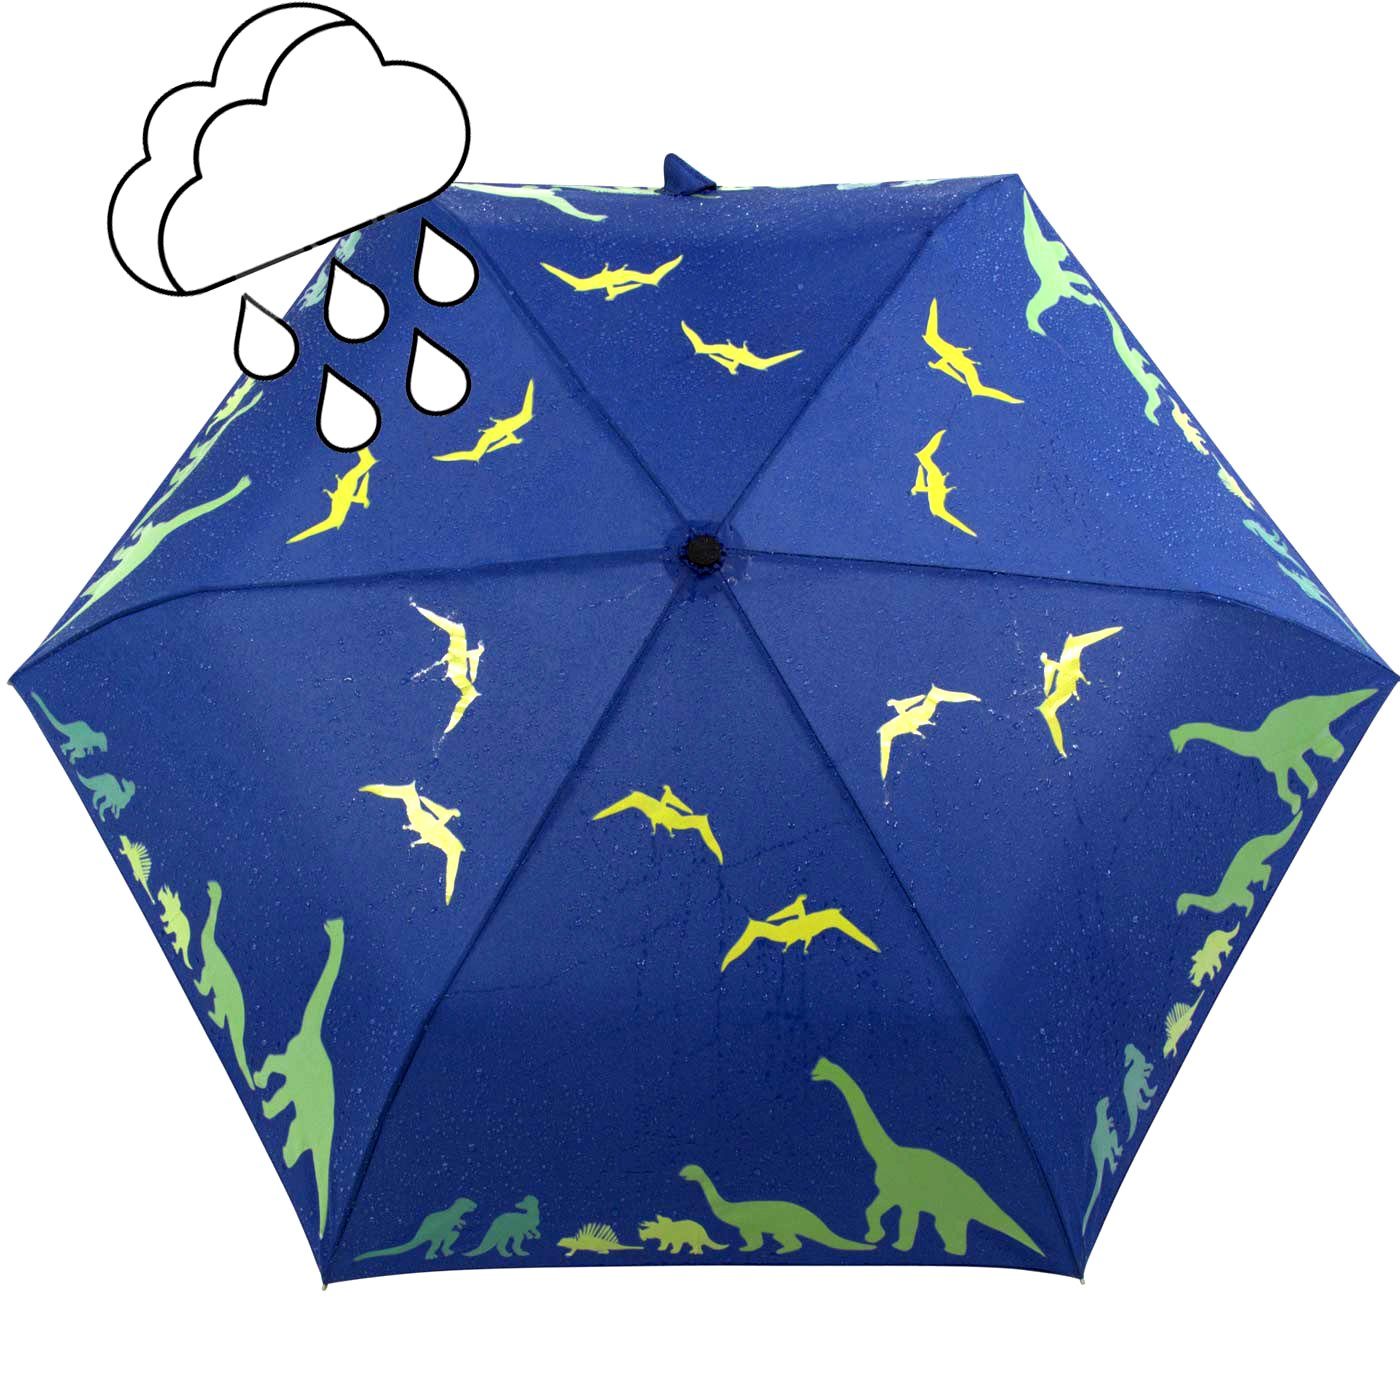 Dinosaurier Mini iX-brella Nässe Farbänderung Wet iX-brella bei Print - Motiv, mit Kinderschirm Taschenregenschirm